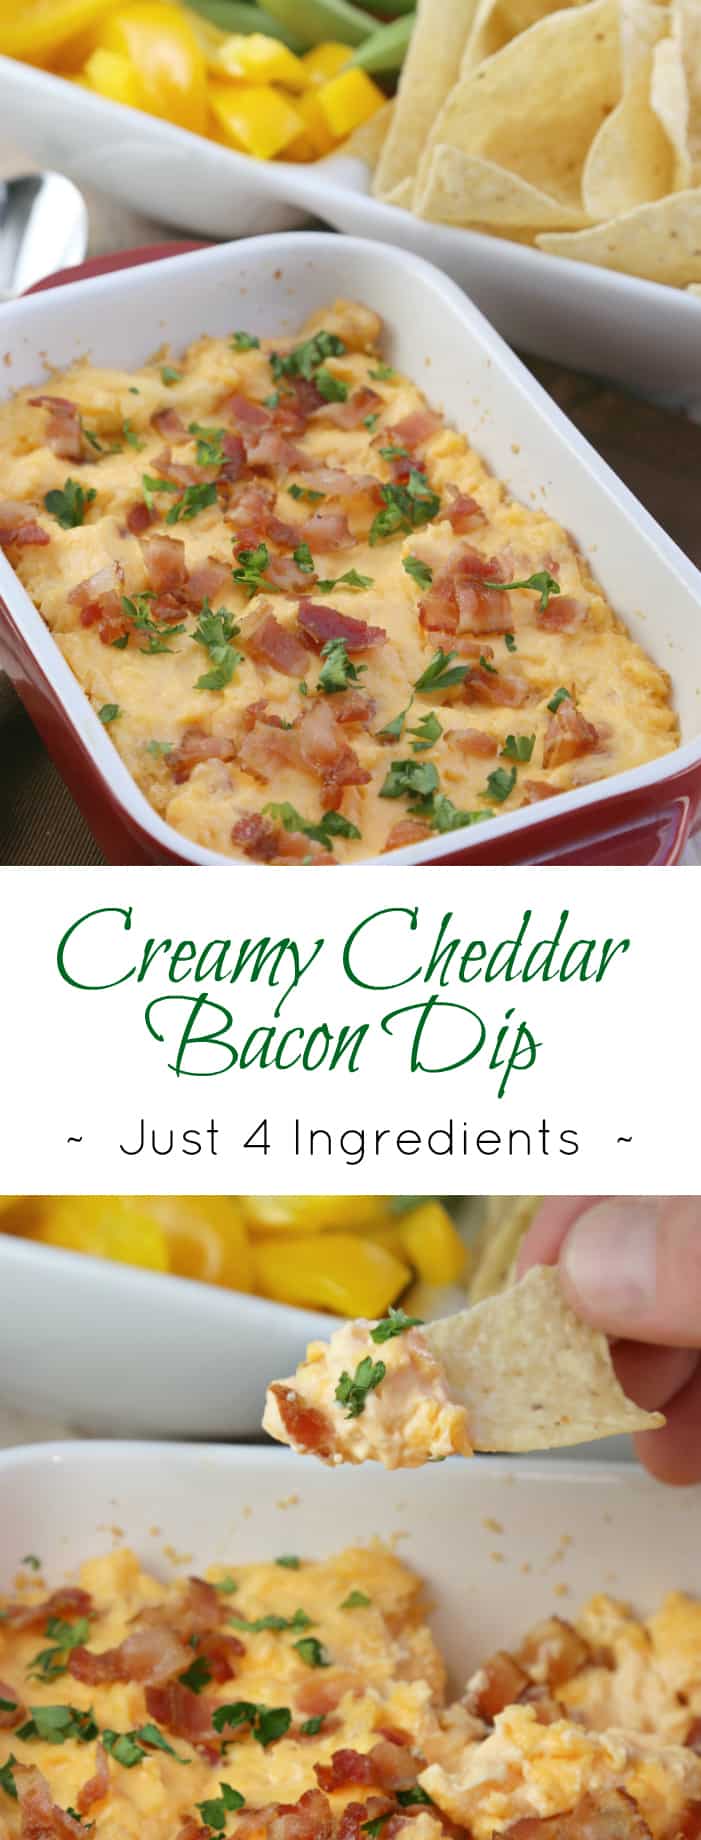 creamy cheddar bacon dip recipe